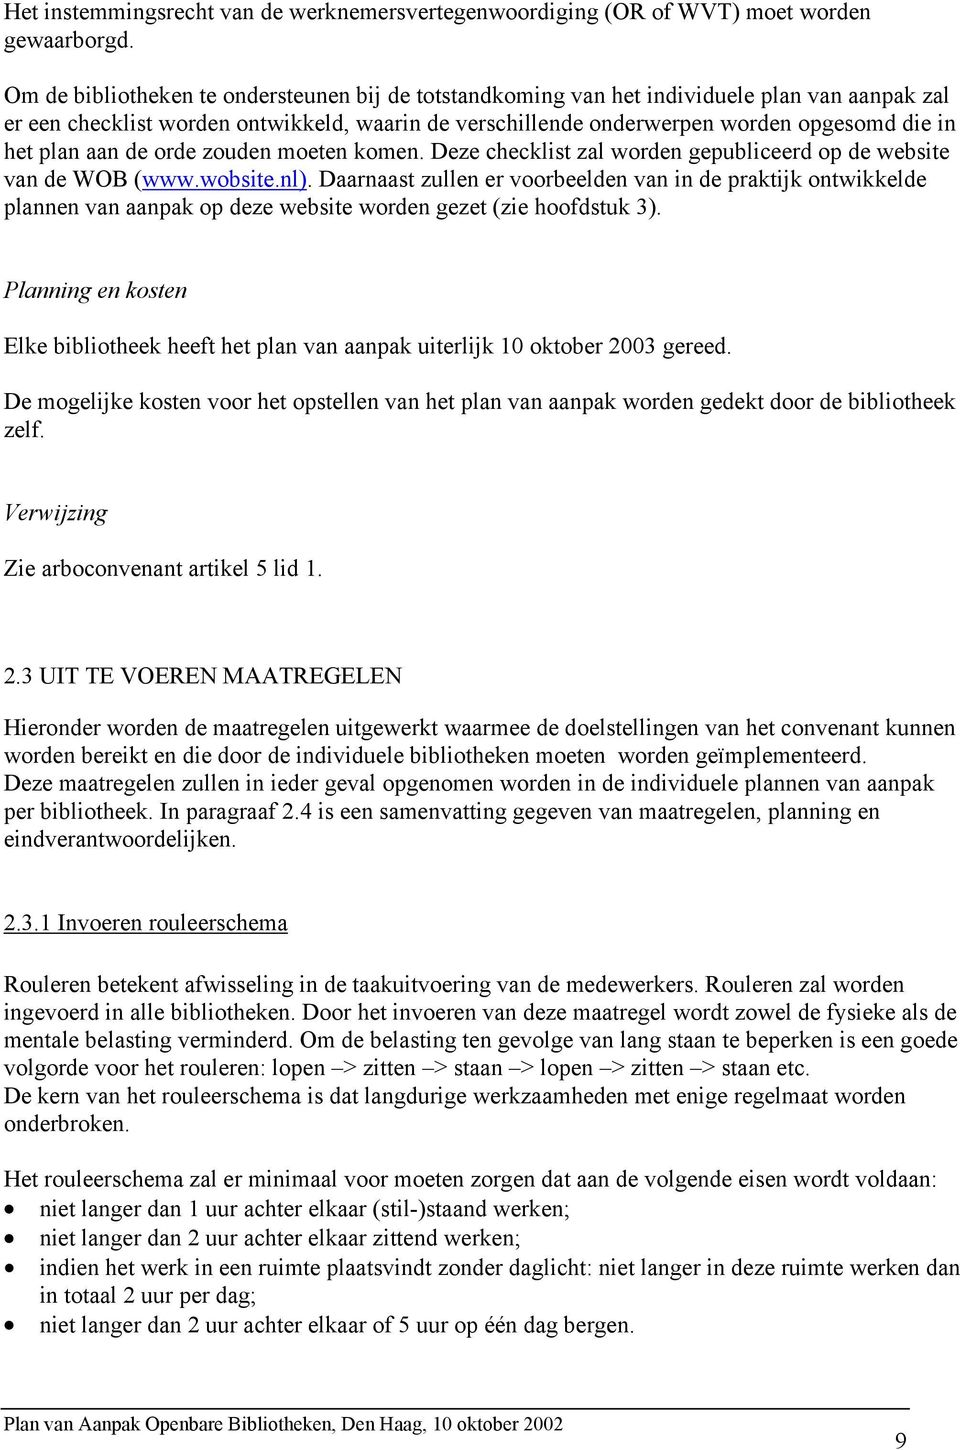 plan aan de orde zouden moeten komen. Deze checklist zal worden gepubliceerd op de website van de WOB (www.wobsite.nl).